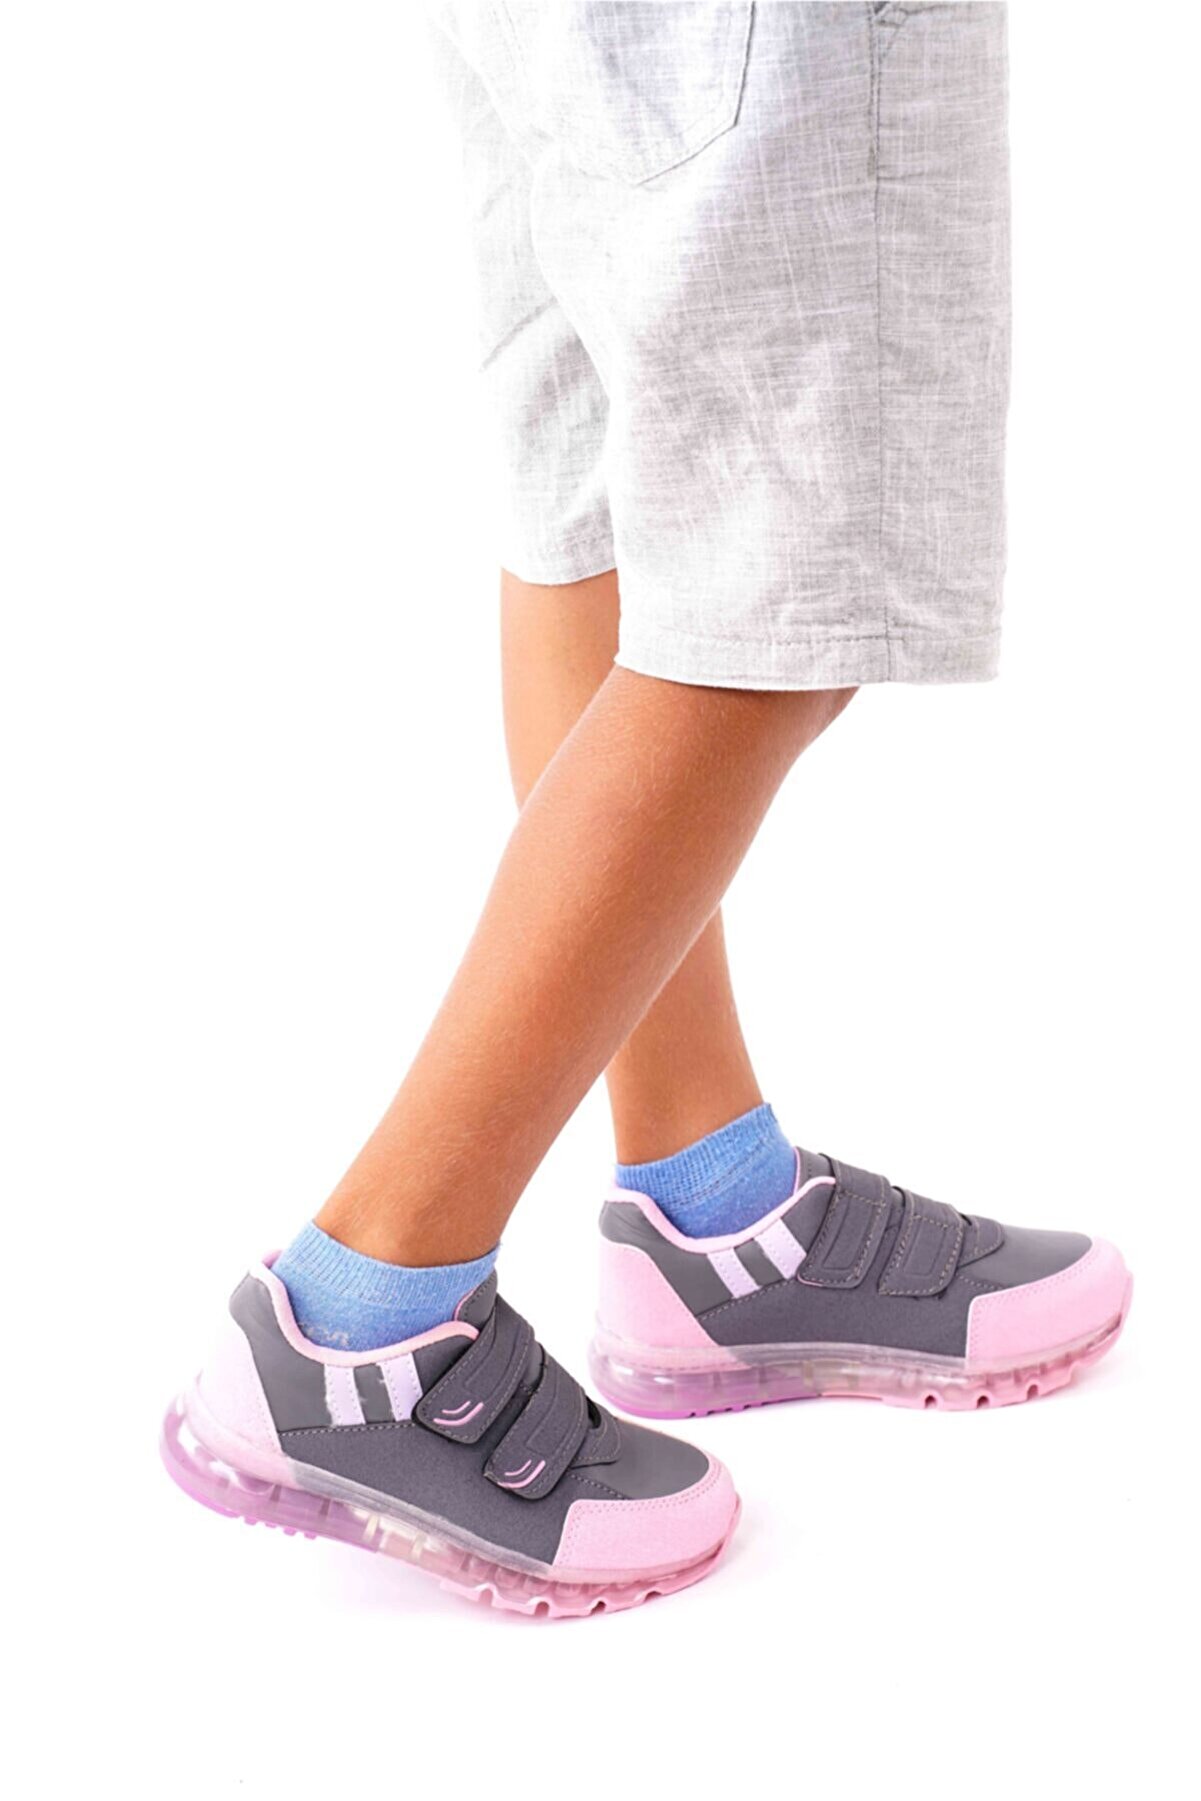 AYN-Shoes Çocuk Füme-pembe Çift Çırtlı Ortapedik Spor Ayakkabı